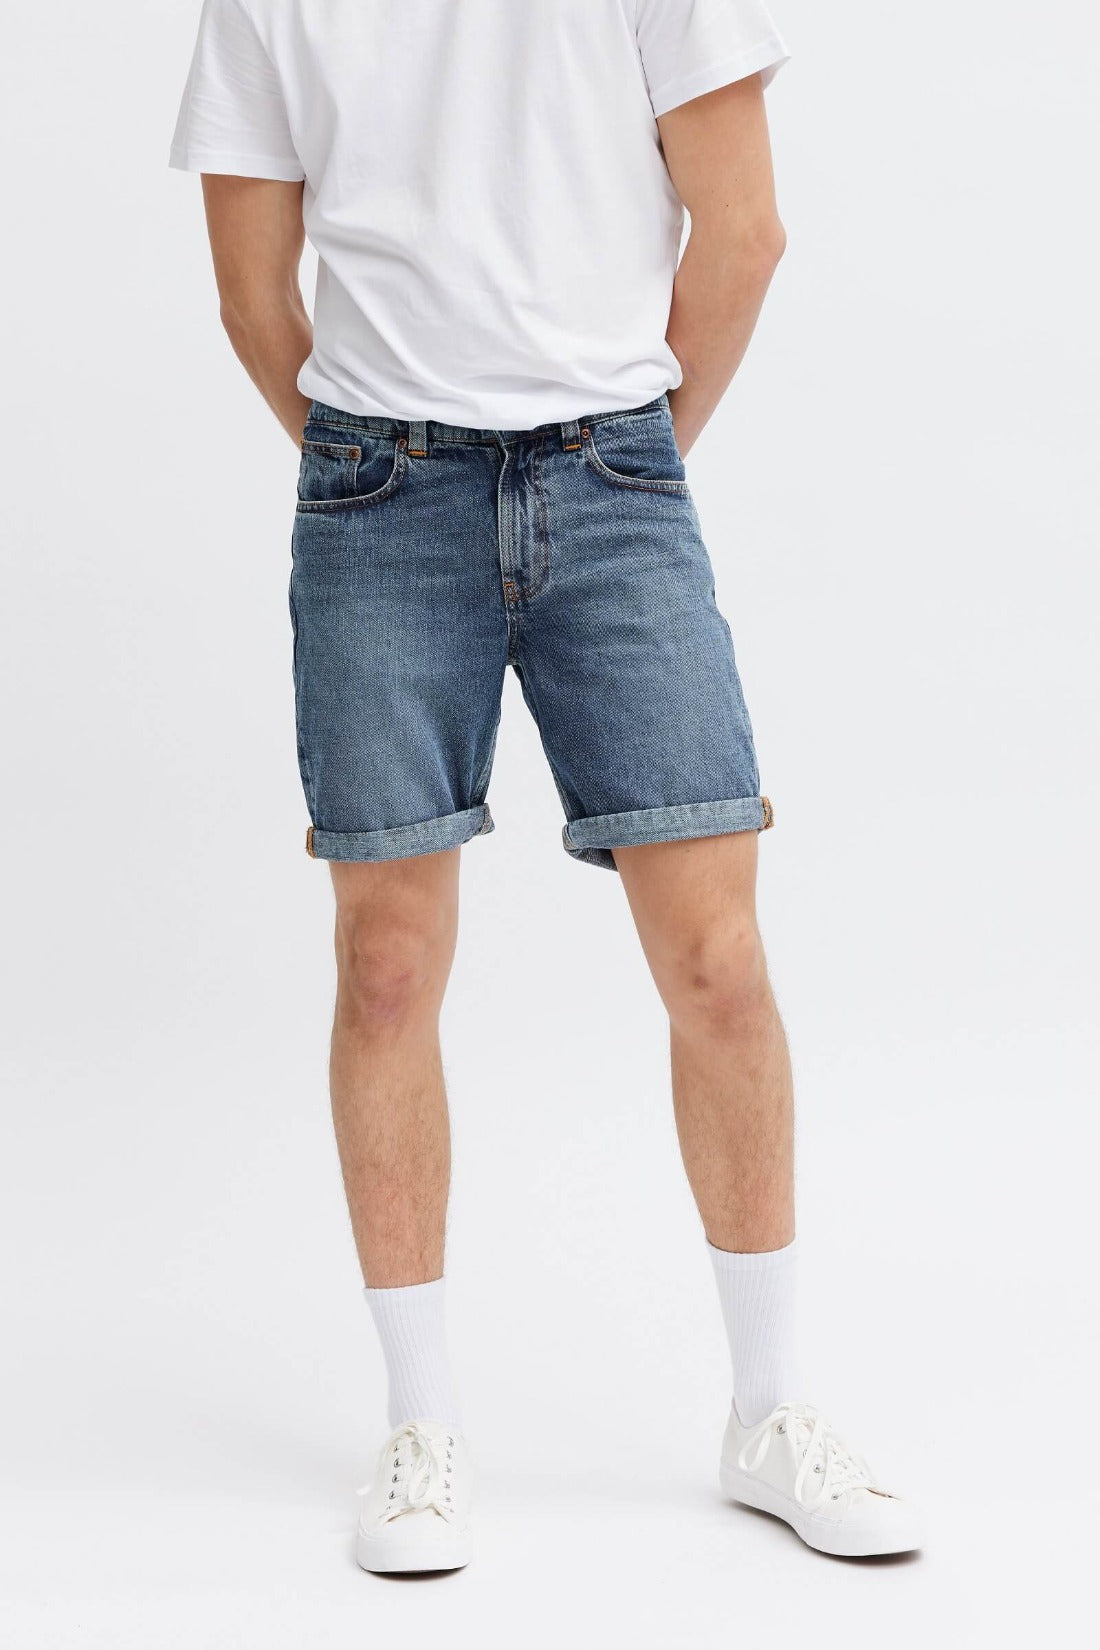 Trendy ethical denim shorts for men. 